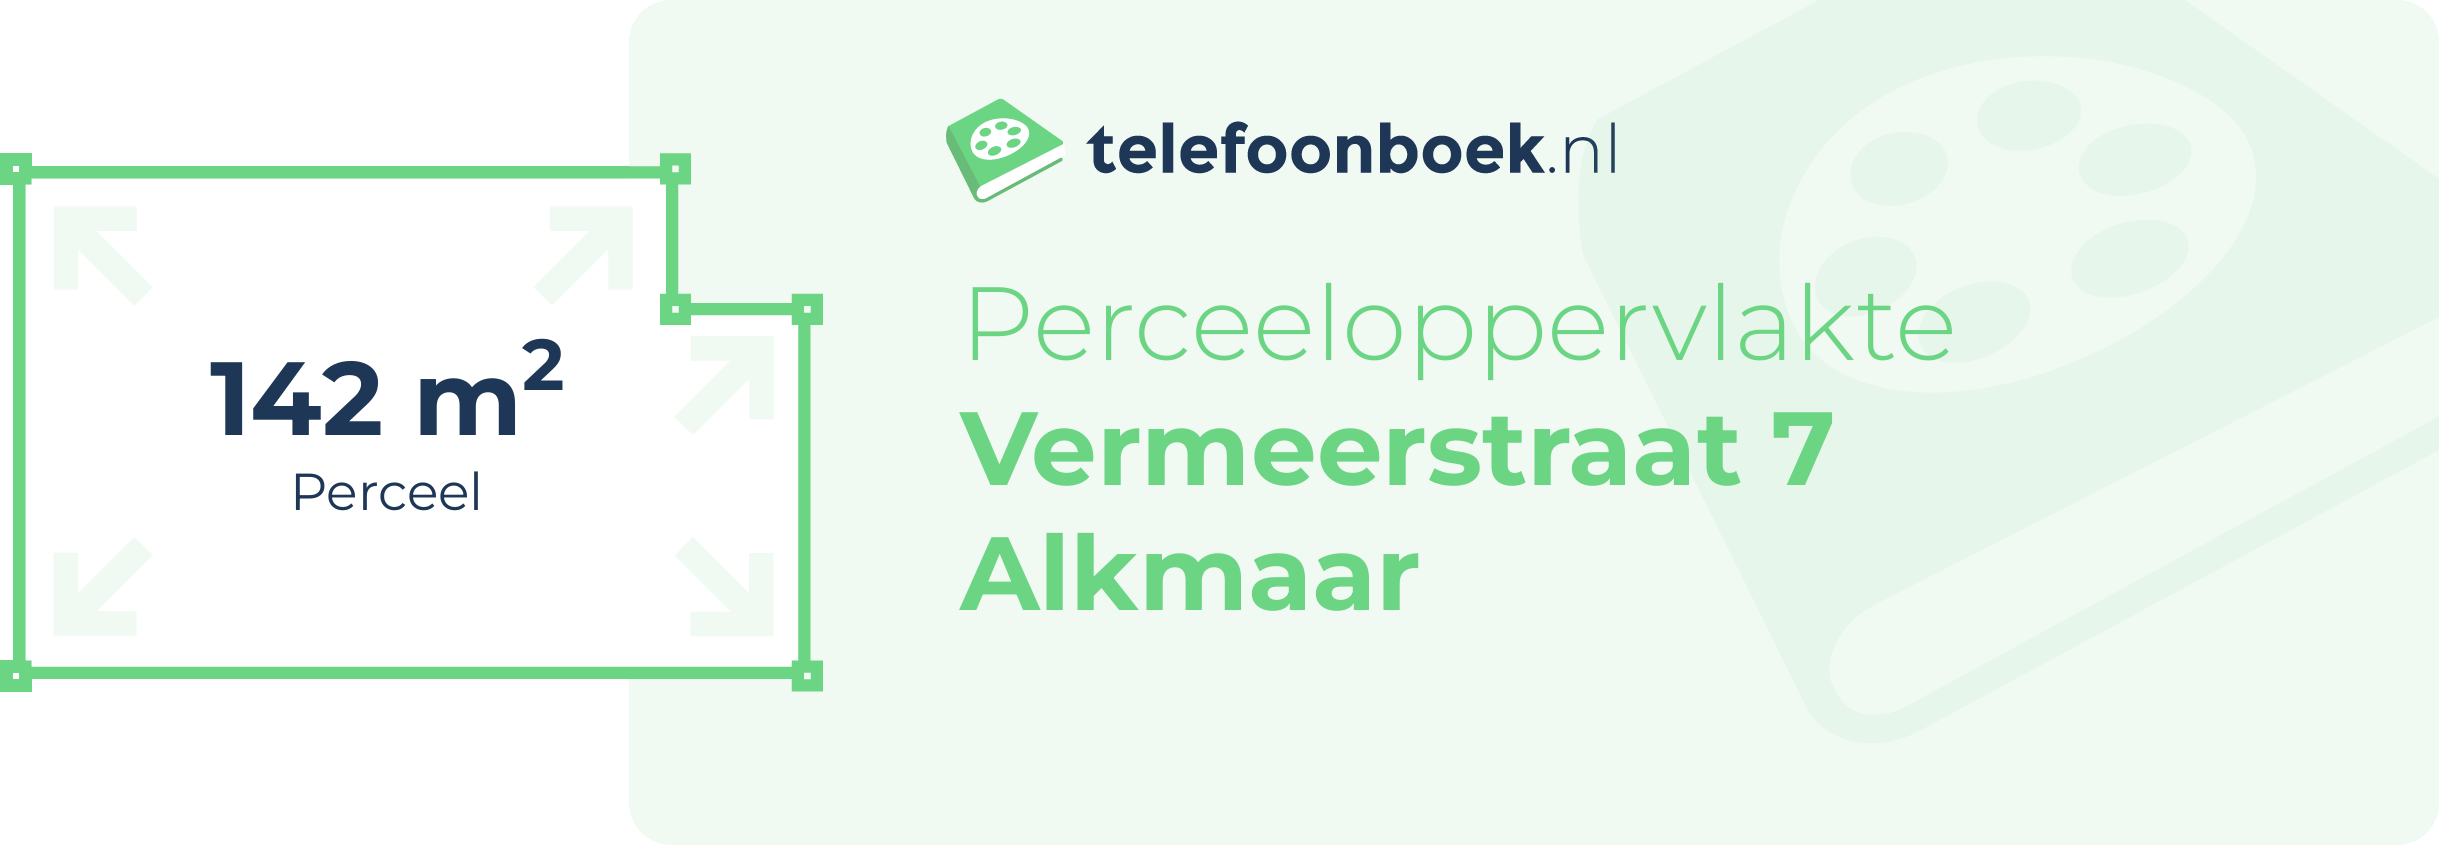 Perceeloppervlakte Vermeerstraat 7 Alkmaar